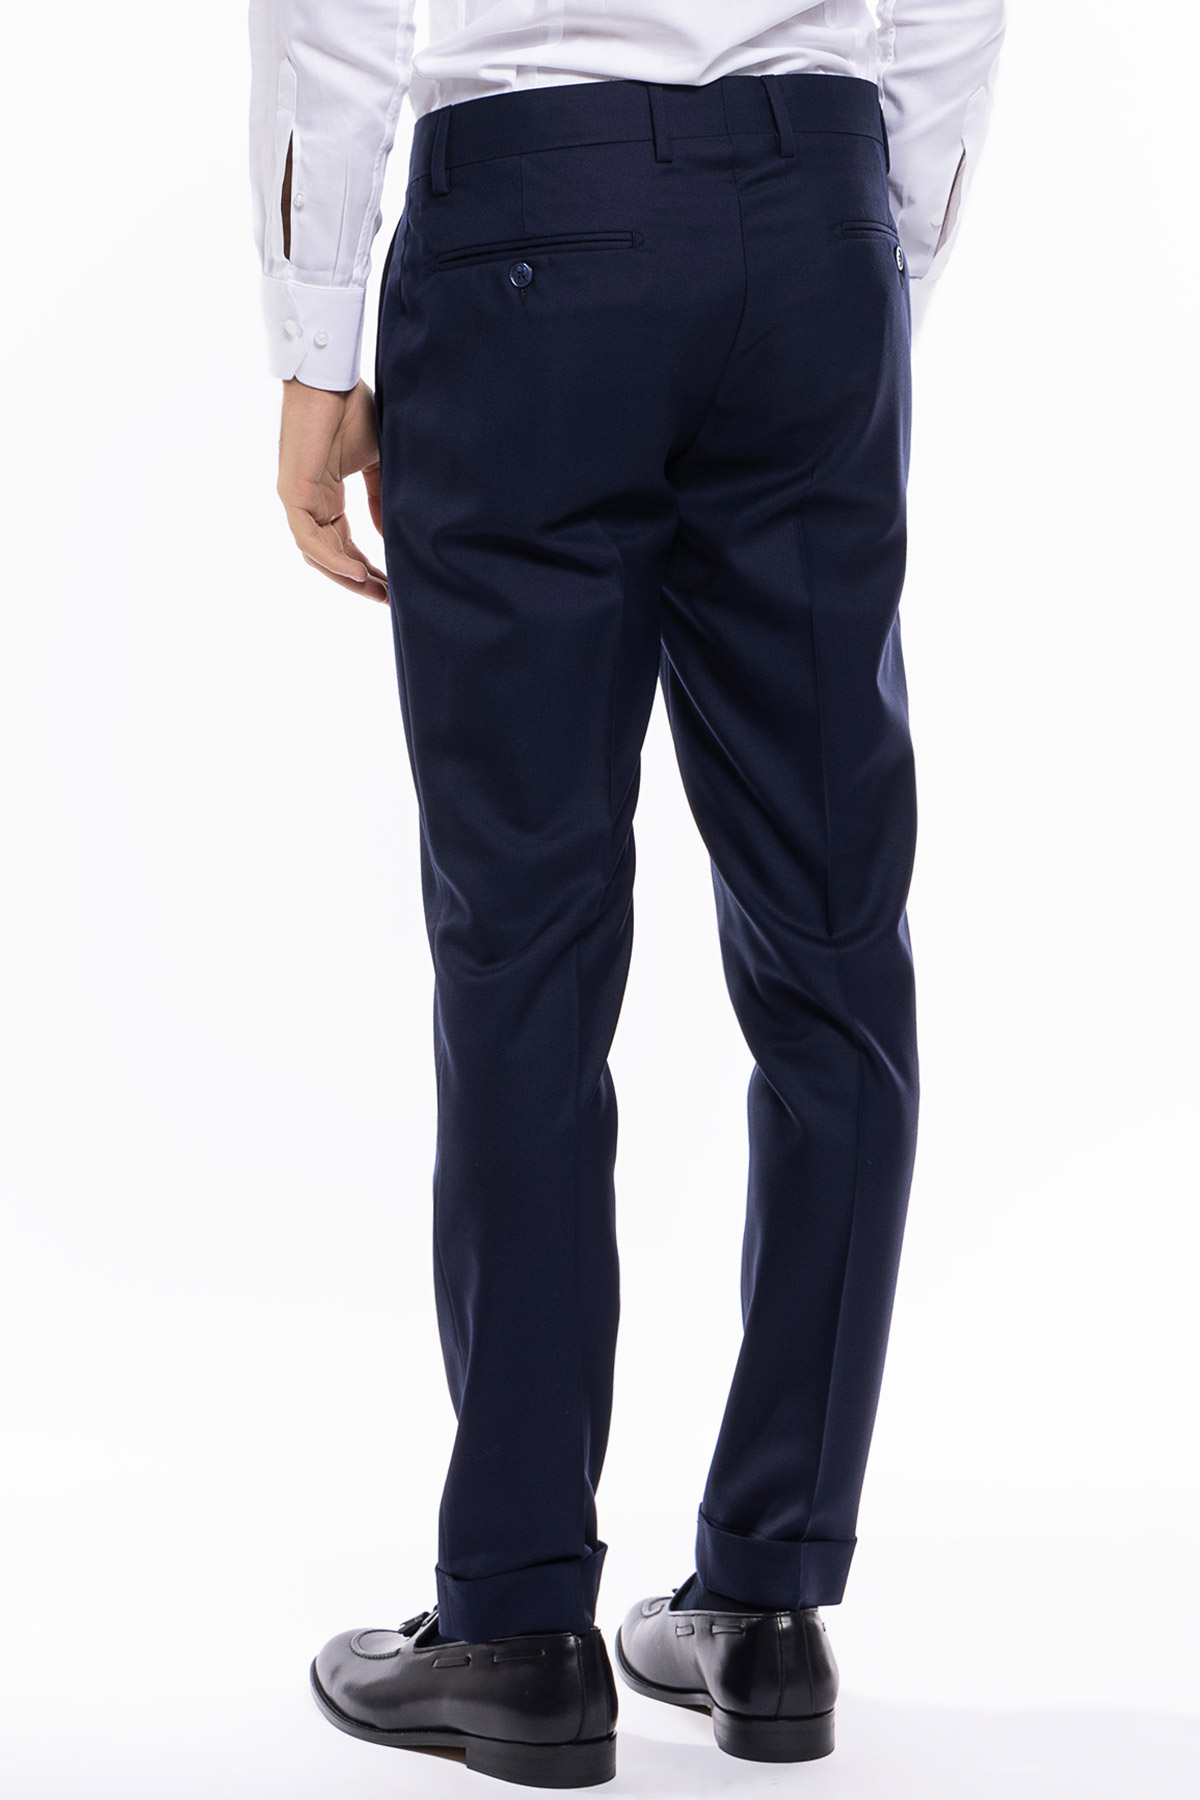 Pantalone uomo navy blu tasca america in fresco lana super 140's holland e sherry slim fit con risvolto di 5cm